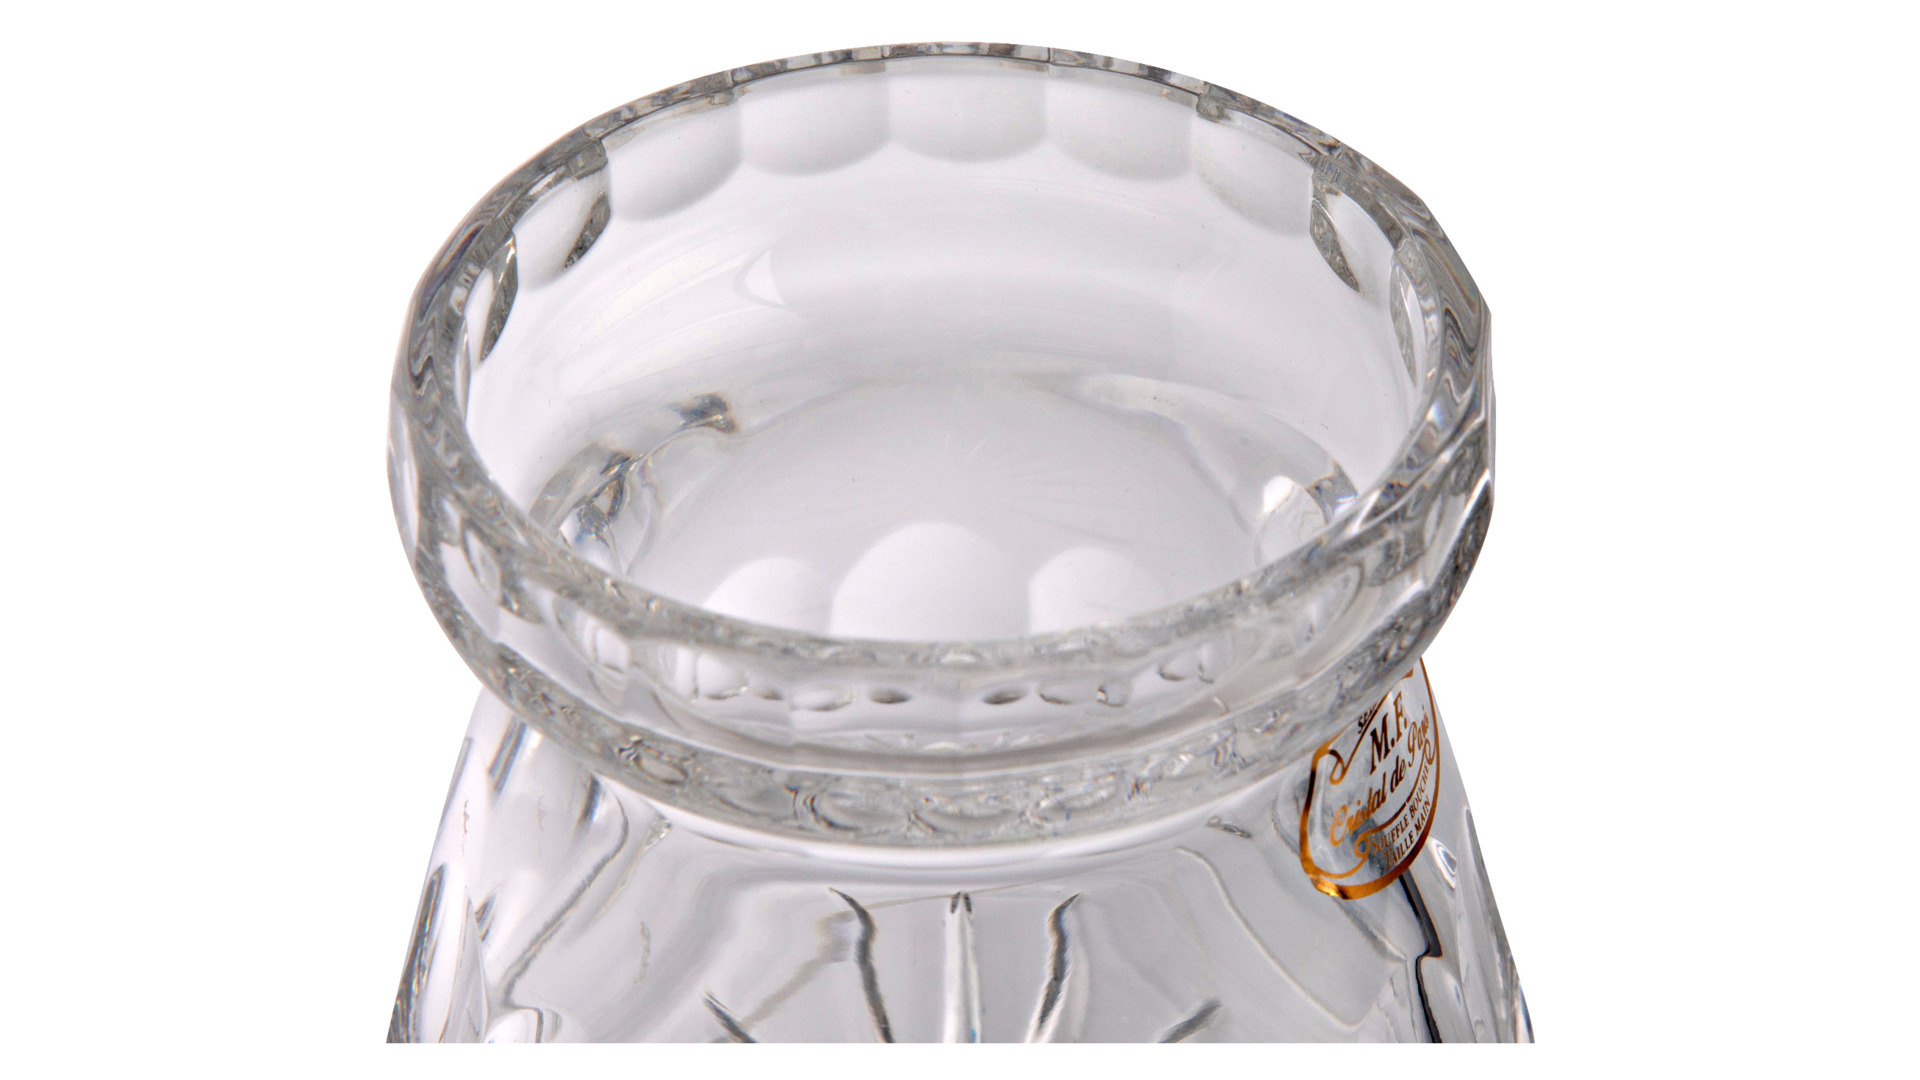 Емкость для меда, джема без крышки Cristal de Paris Трианон 250мл, хрусталь